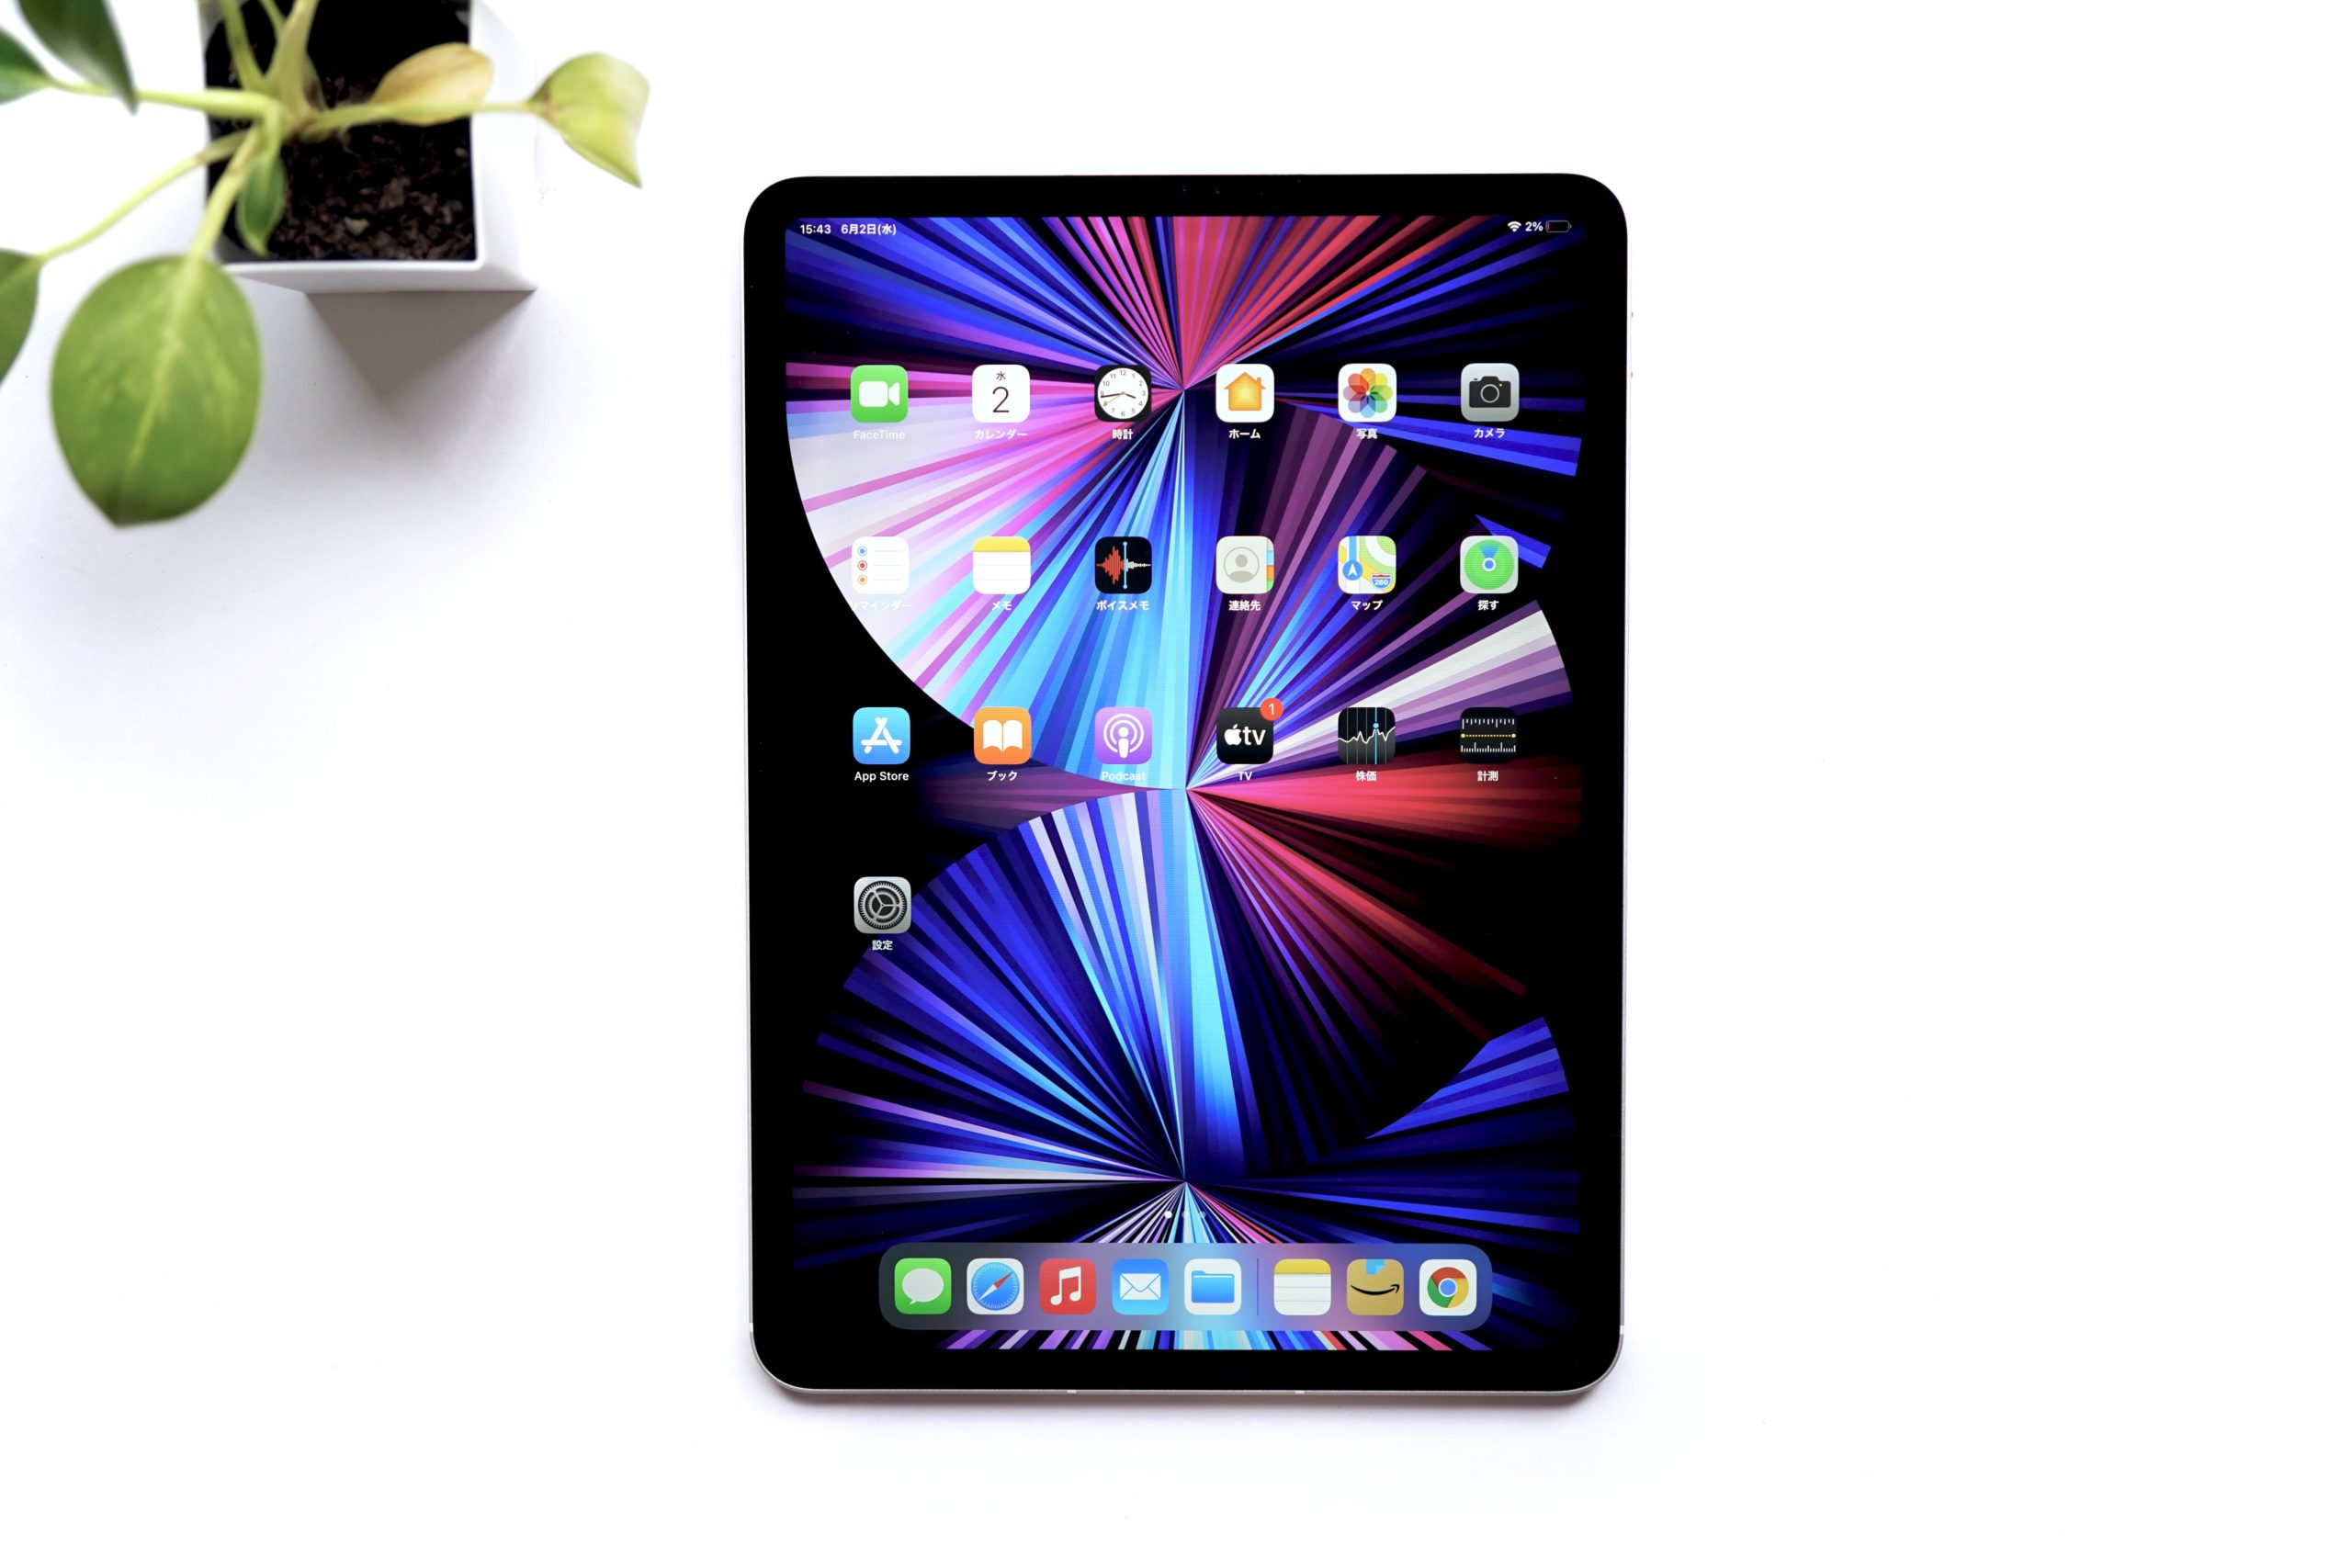 iPad Pro 11インチ レビュー： 2021 第3世代 M1チップ搭載モデル